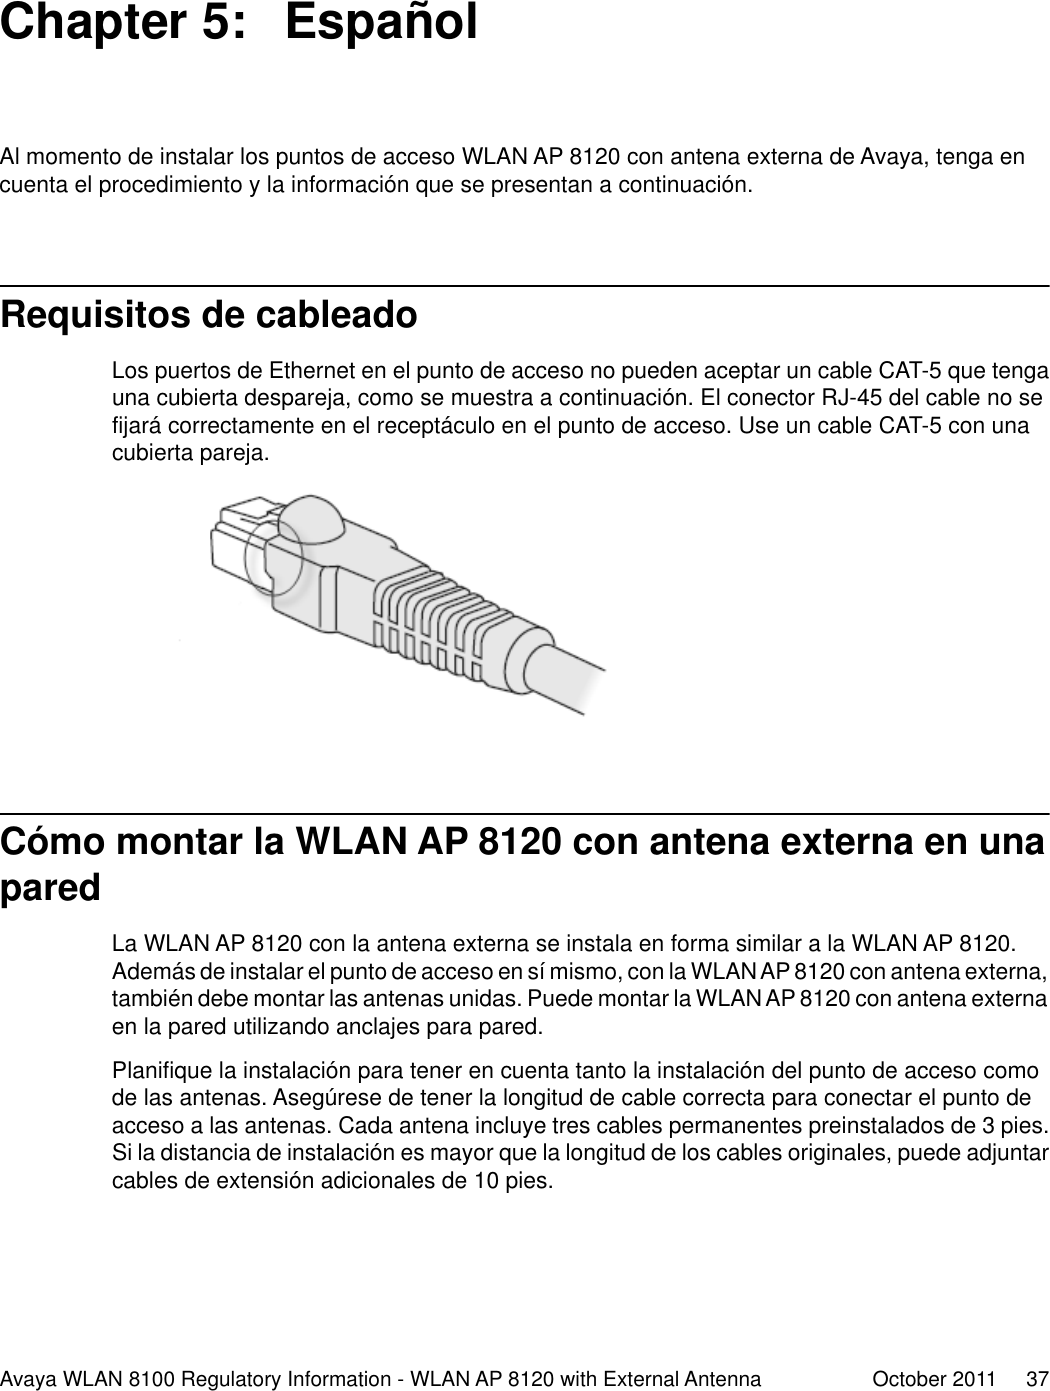 Chapter 5:  EspañolAl momento de instalar los puntos de acceso WLAN AP 8120 con antena externa de Avaya, tenga encuenta el procedimiento y la información que se presentan a continuación.Requisitos de cableadoLos puertos de Ethernet en el punto de acceso no pueden aceptar un cable CAT-5 que tengauna cubierta despareja, como se muestra a continuación. El conector RJ-45 del cable no sefijará correctamente en el receptáculo en el punto de acceso. Use un cable CAT-5 con unacubierta pareja.Cómo montar la WLAN AP 8120 con antena externa en unaparedLa WLAN AP 8120 con la antena externa se instala en forma similar a la WLAN AP 8120.Además de instalar el punto de acceso en sí mismo, con la WLAN AP 8120 con antena externa,también debe montar las antenas unidas. Puede montar la WLAN AP 8120 con antena externaen la pared utilizando anclajes para pared.Planifique la instalación para tener en cuenta tanto la instalación del punto de acceso comode las antenas. Asegúrese de tener la longitud de cable correcta para conectar el punto deacceso a las antenas. Cada antena incluye tres cables permanentes preinstalados de 3 pies.Si la distancia de instalación es mayor que la longitud de los cables originales, puede adjuntarcables de extensión adicionales de 10 pies.Avaya WLAN 8100 Regulatory Information - WLAN AP 8120 with External Antenna October 2011     37